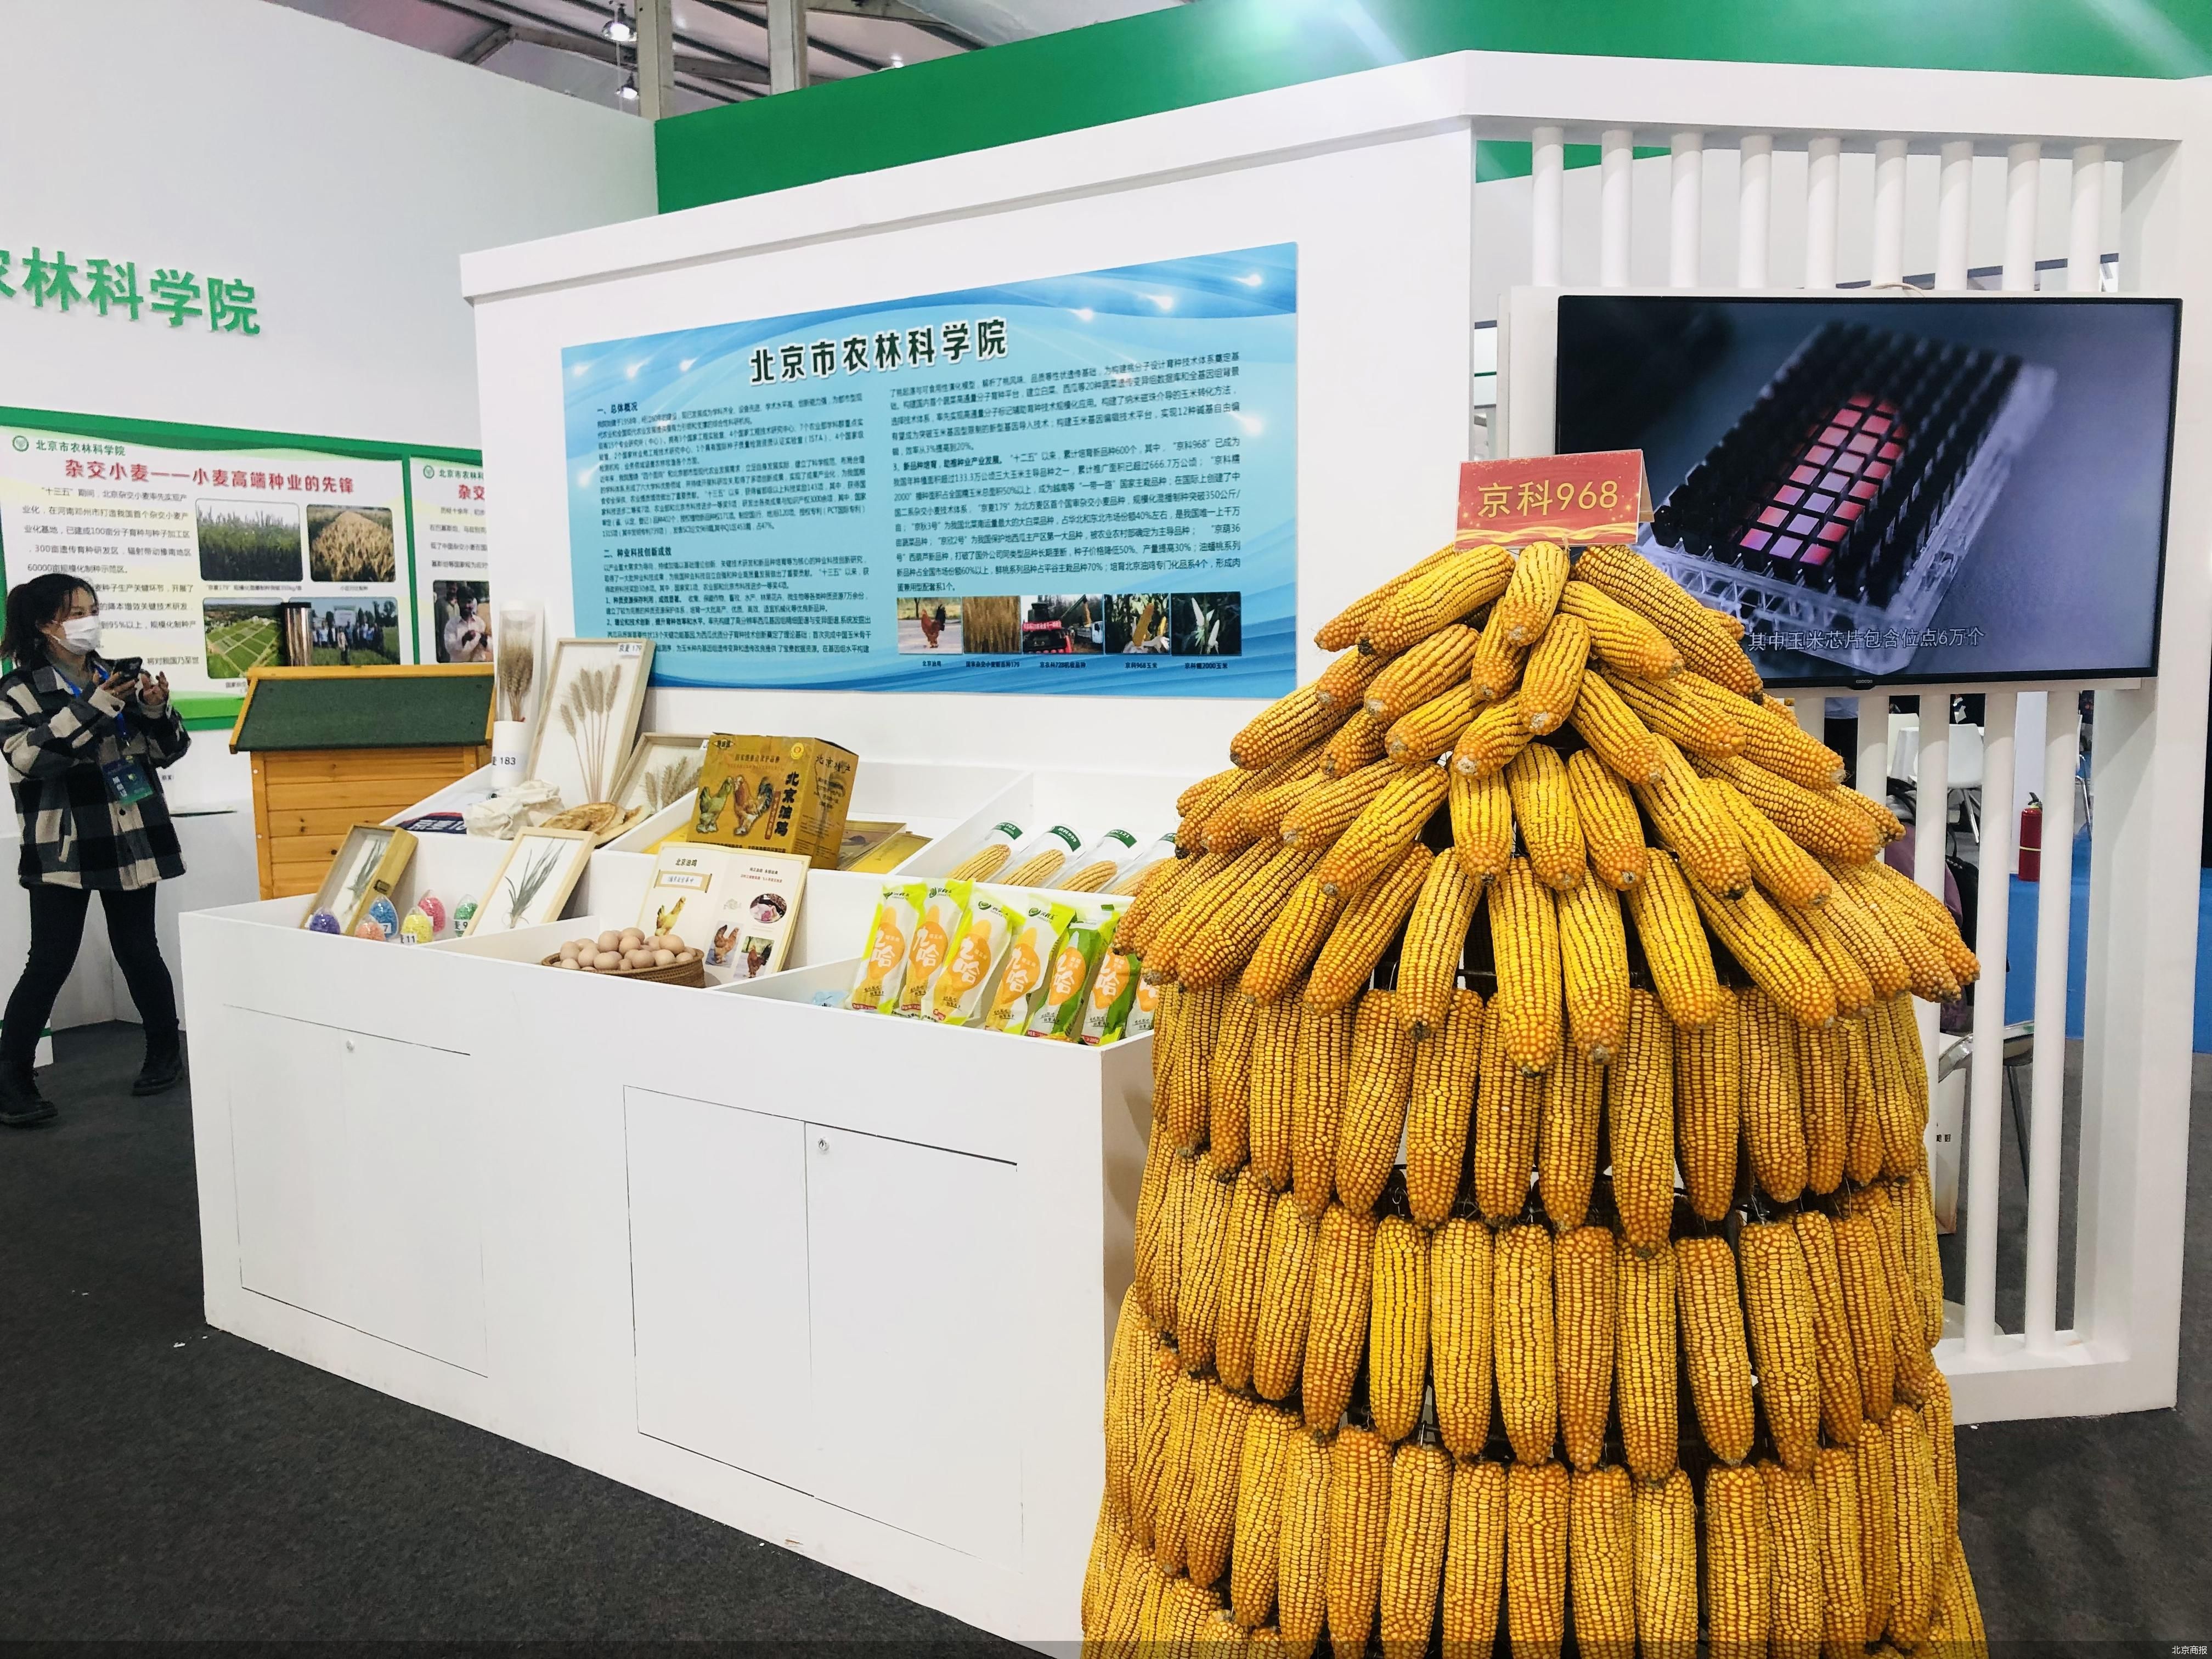 “玉米自交系”抢眼 种业振兴北京如何打头阵